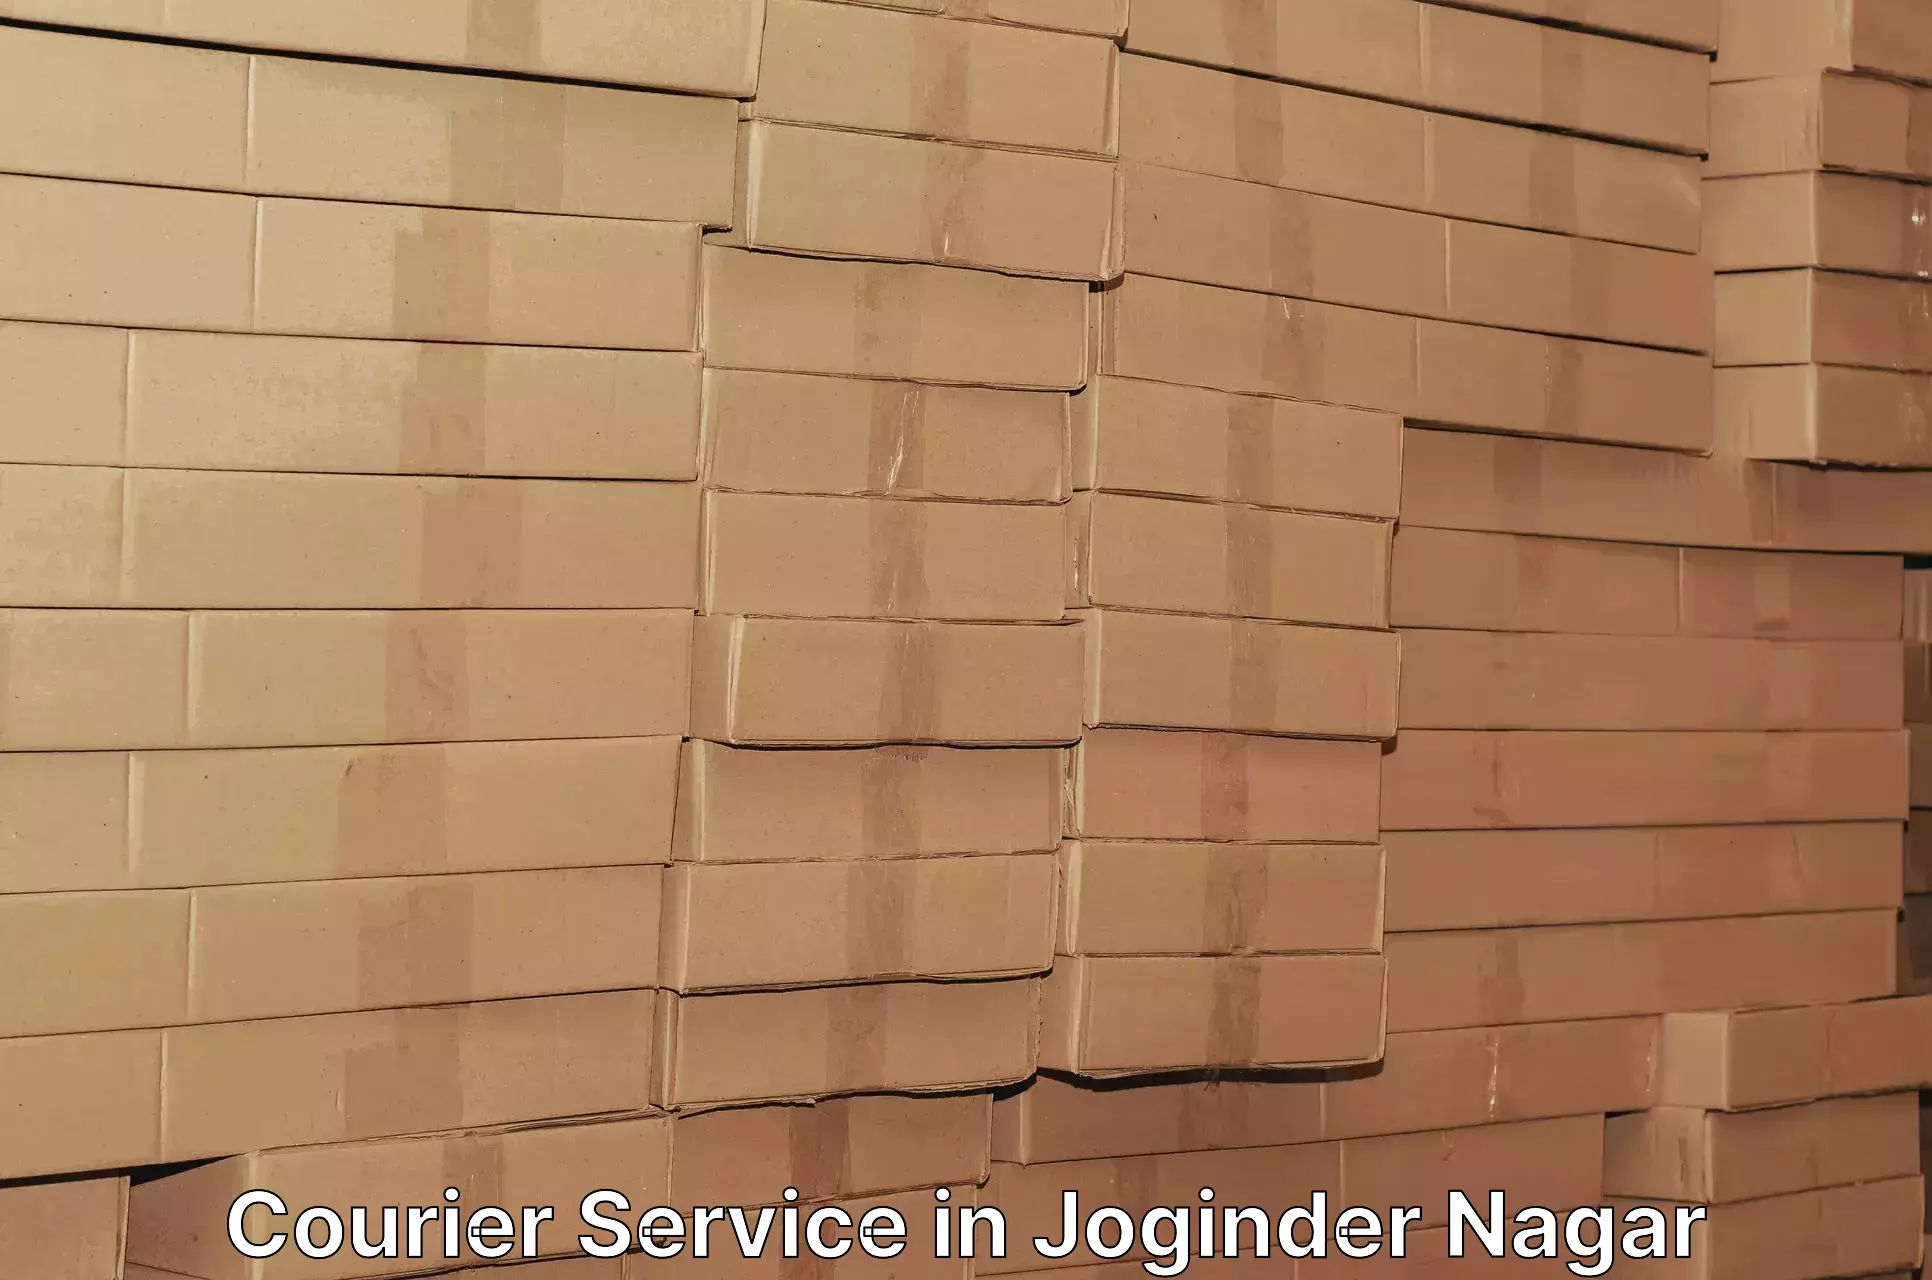 On-demand delivery in Joginder Nagar